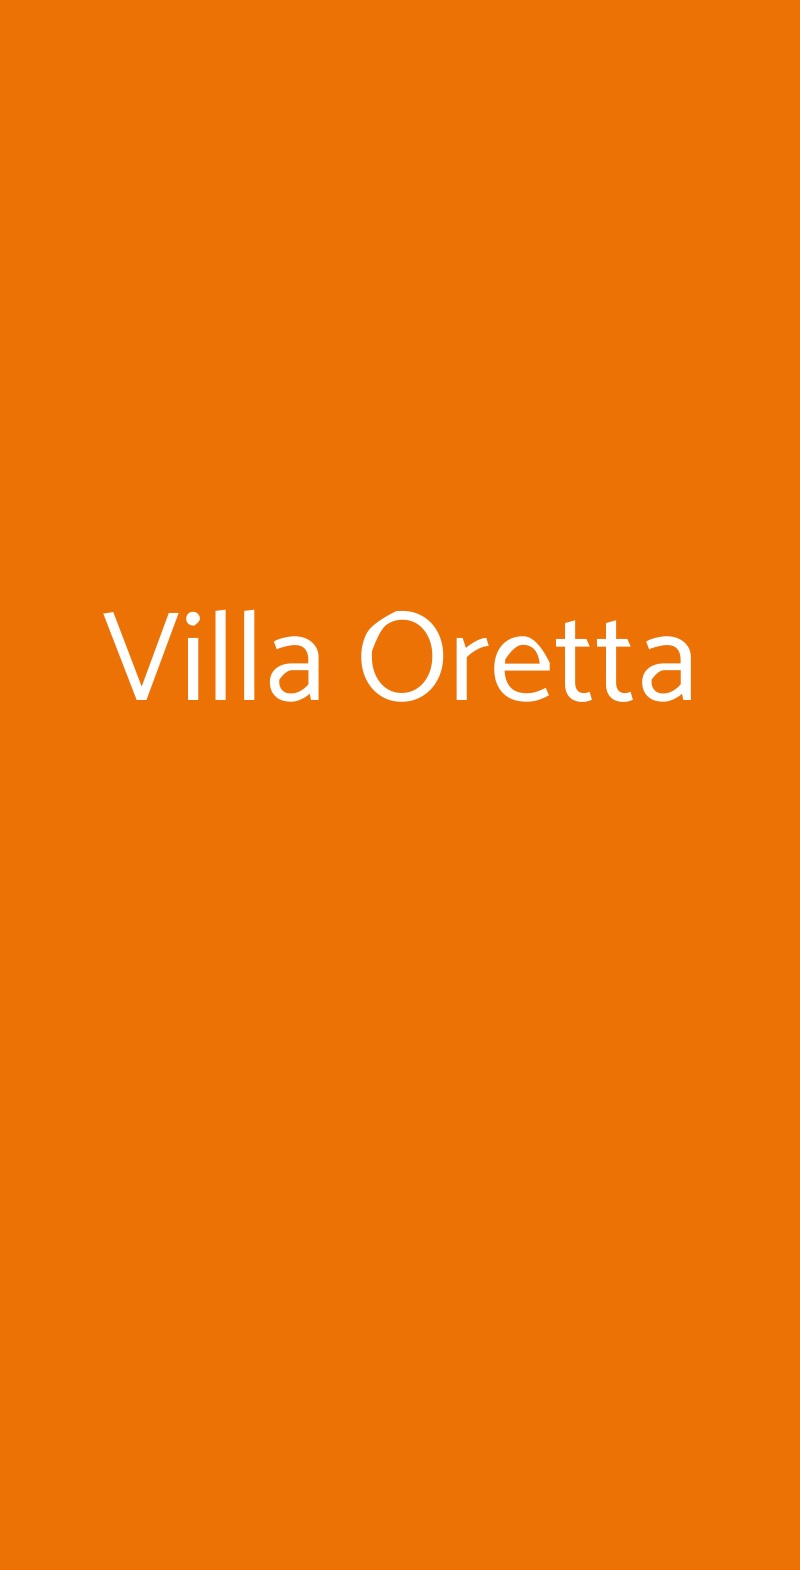 Villa Oretta Cortina d'Ampezzo menù 1 pagina